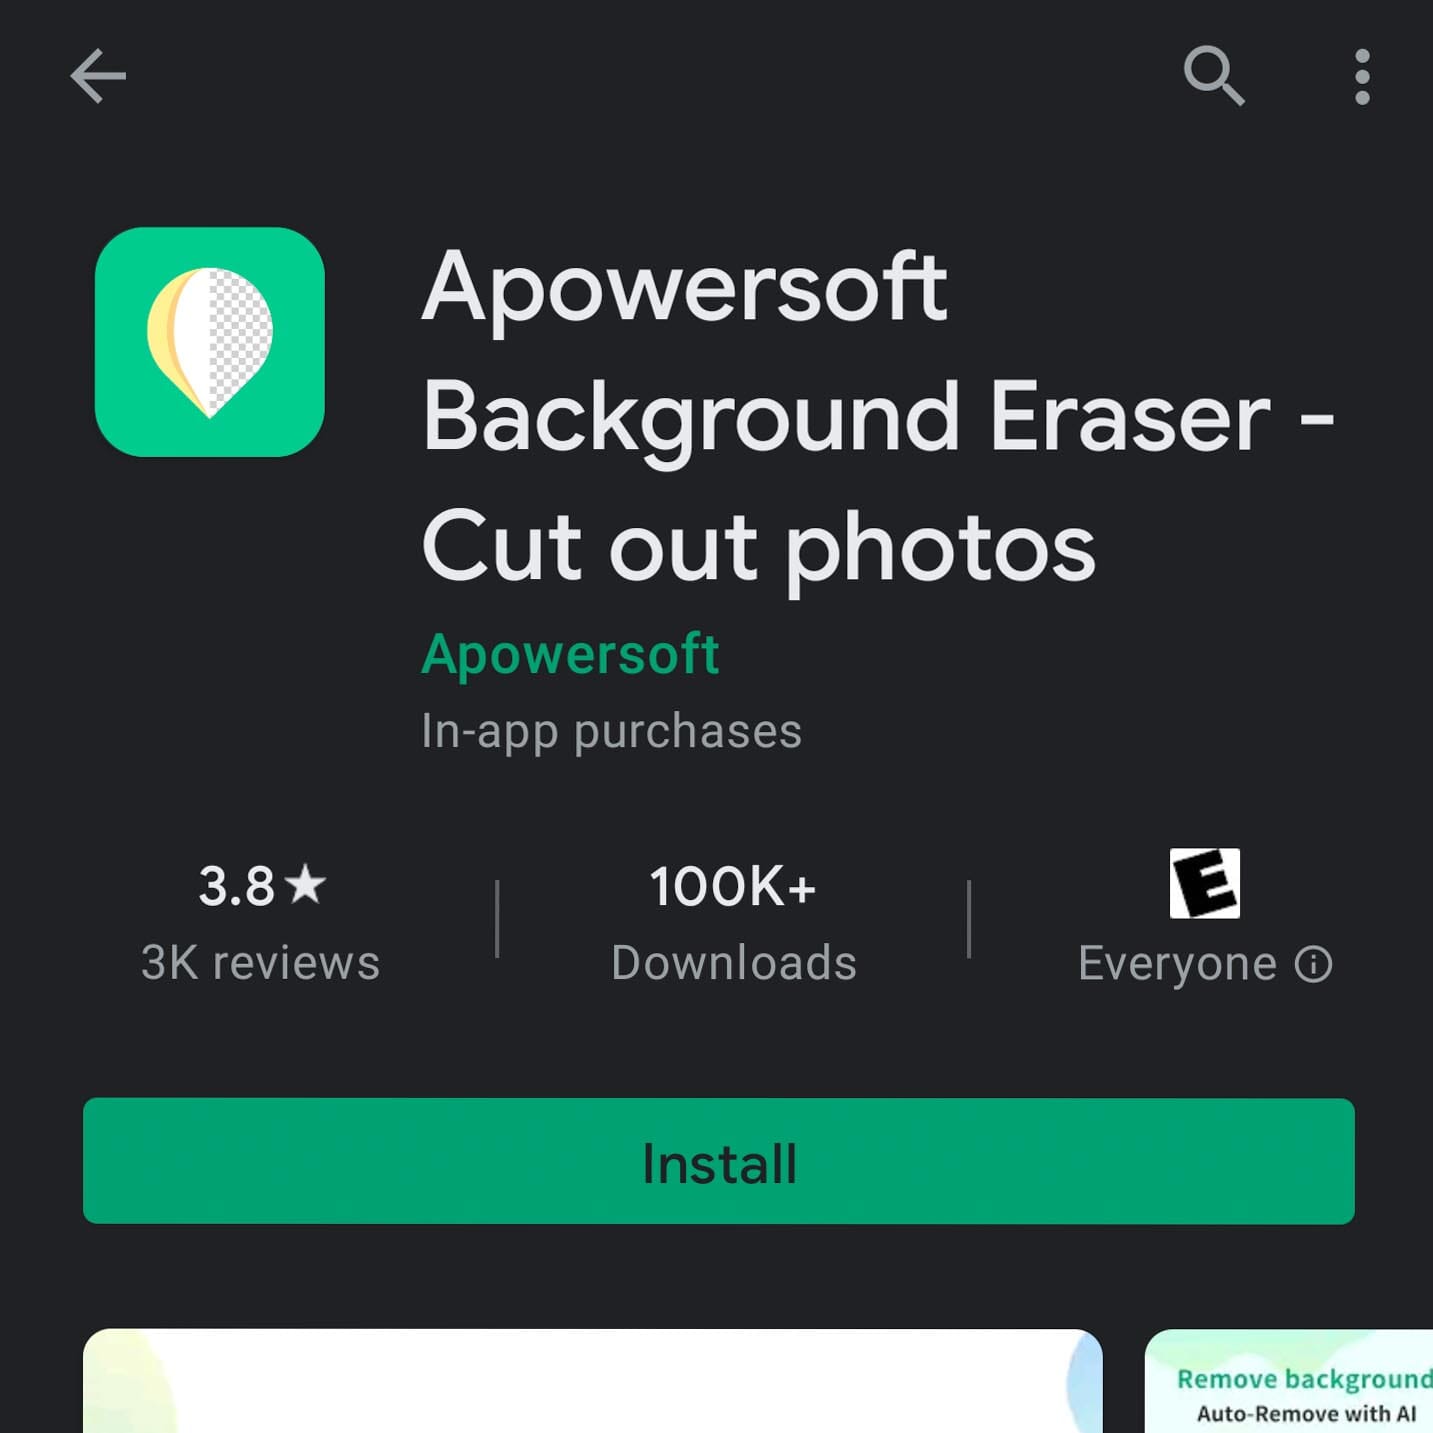 Apowersoft Background Eraser